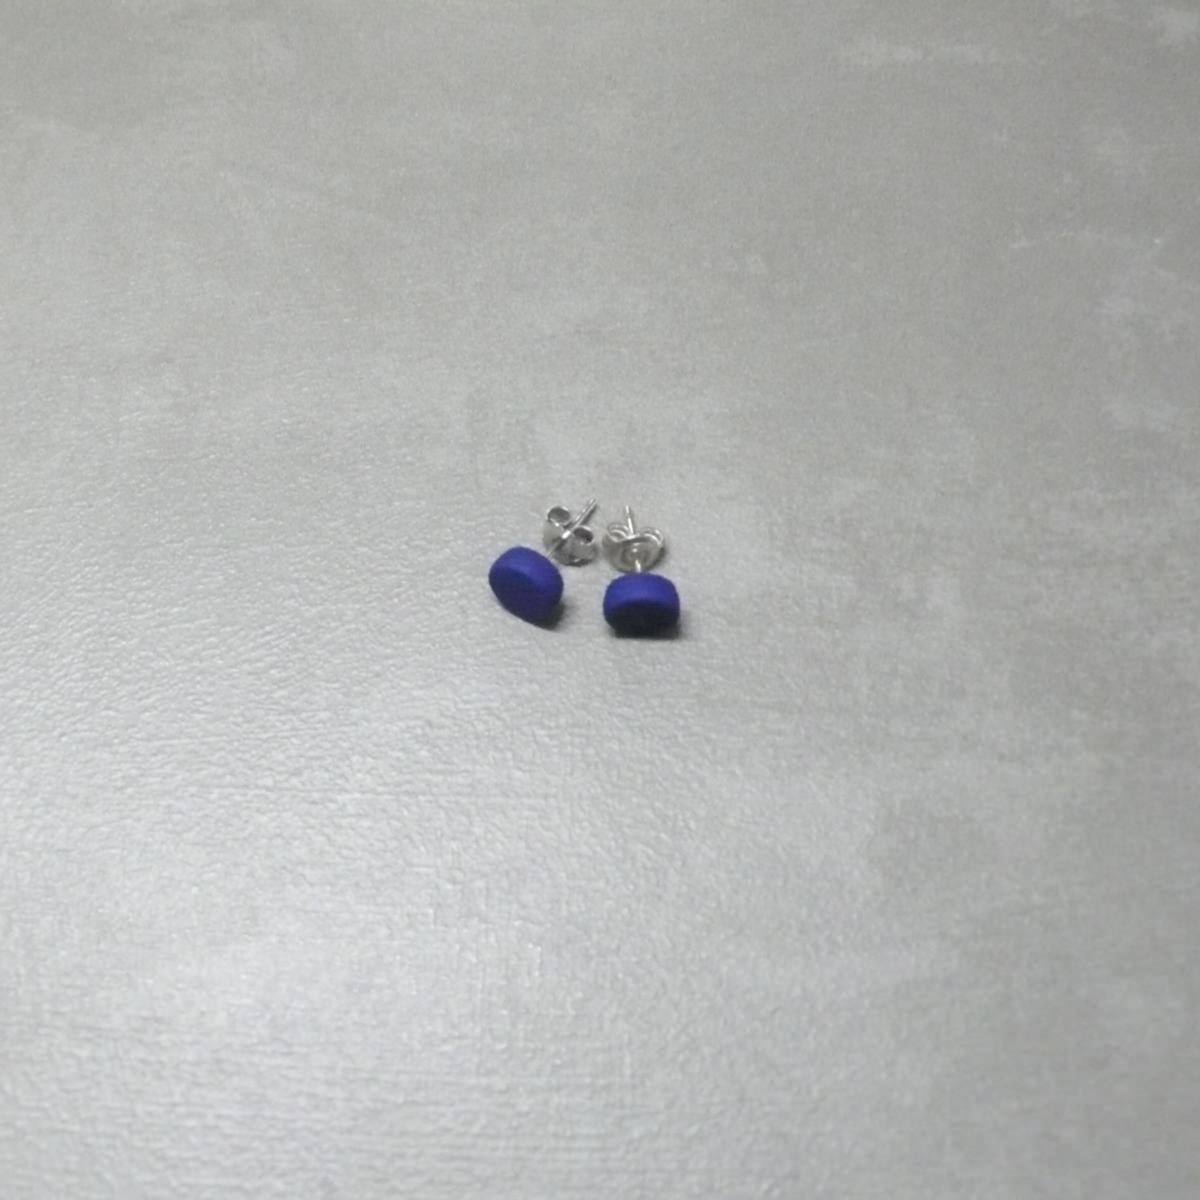 MONICA CASTIGLIONI 3D-O-KRAFFEN-01 / Violet blue